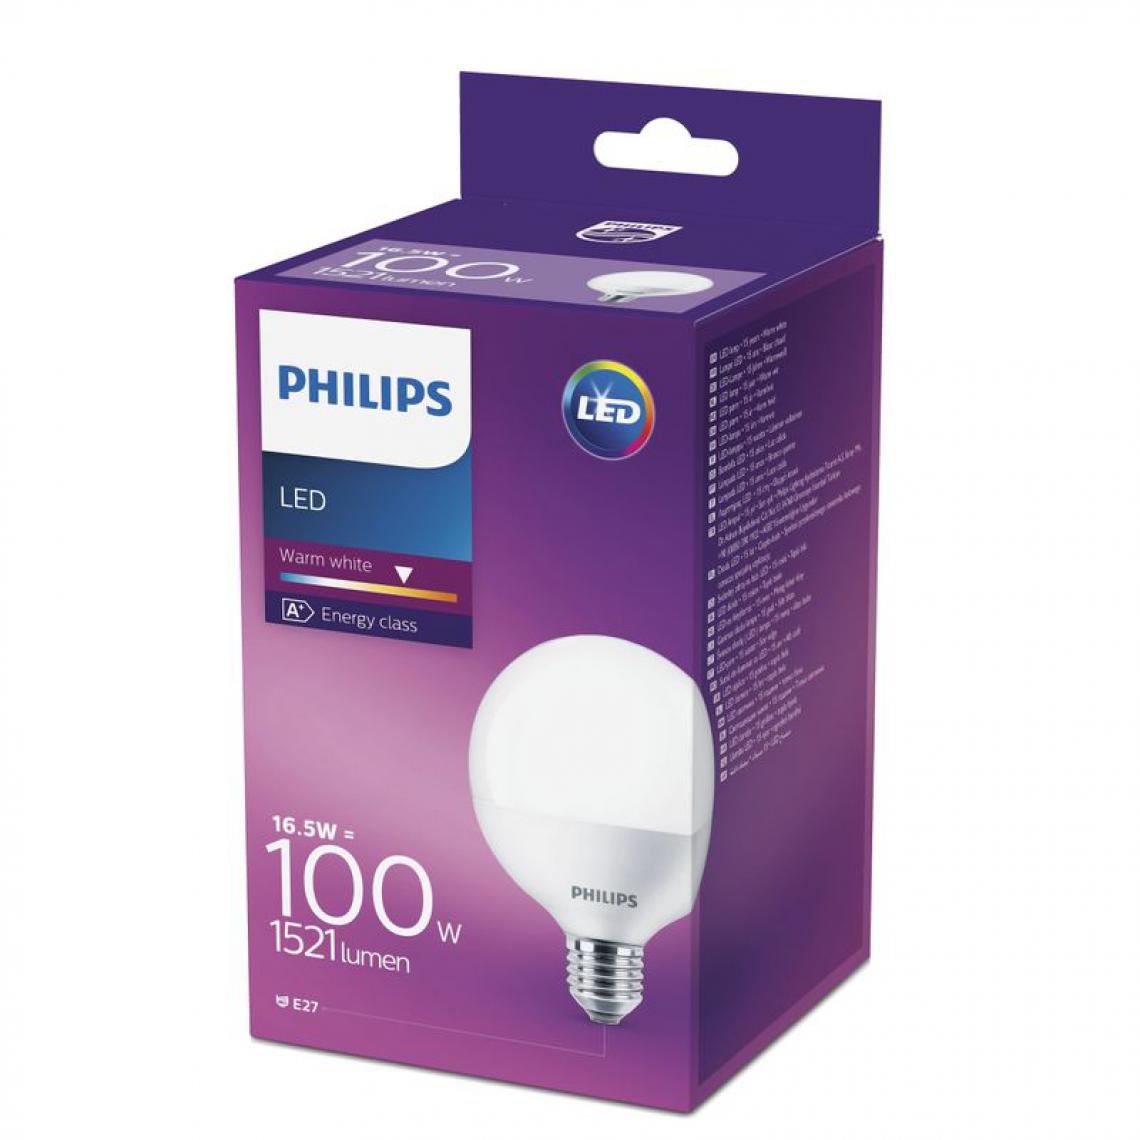 Philips - Ampole LED 16,5W équiv 100W 1521 lm E27 Blanc chaud - Ampoules LED